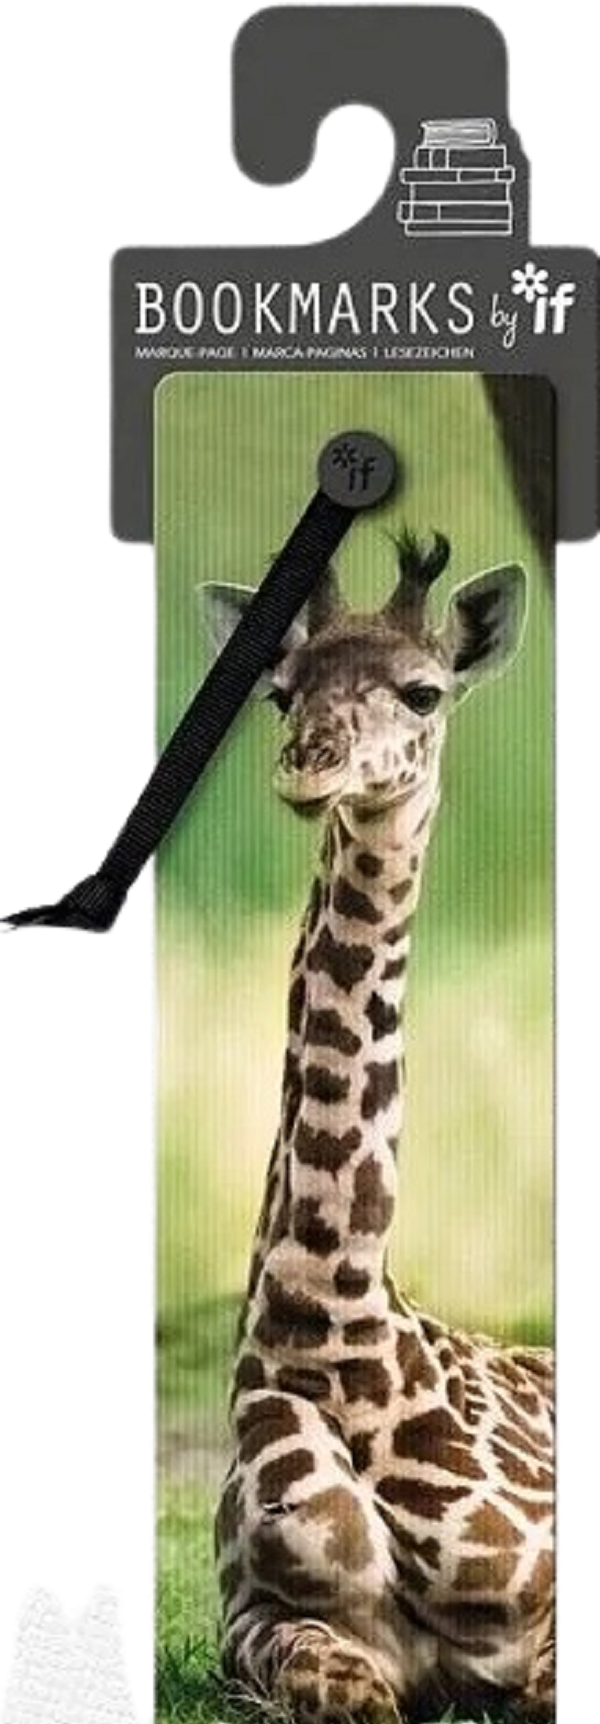 Semn de carte 3D: Girafa